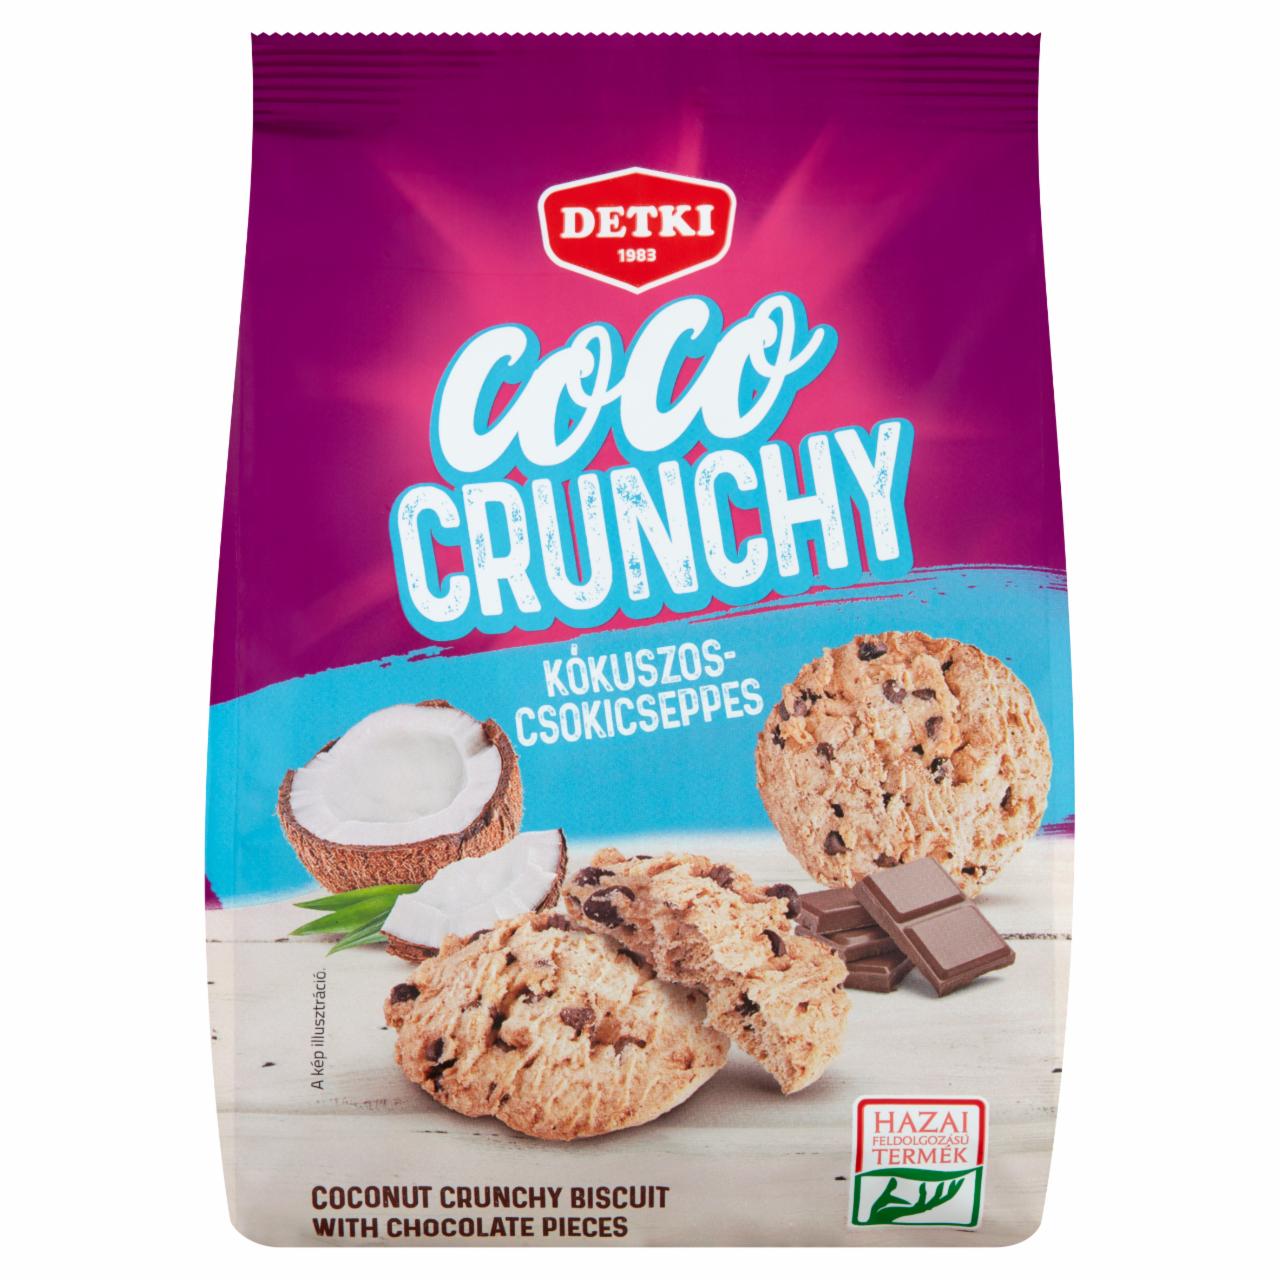 Képek - Detki Coco Crunchy kókuszos-csokicseppes teasütemény 150 g